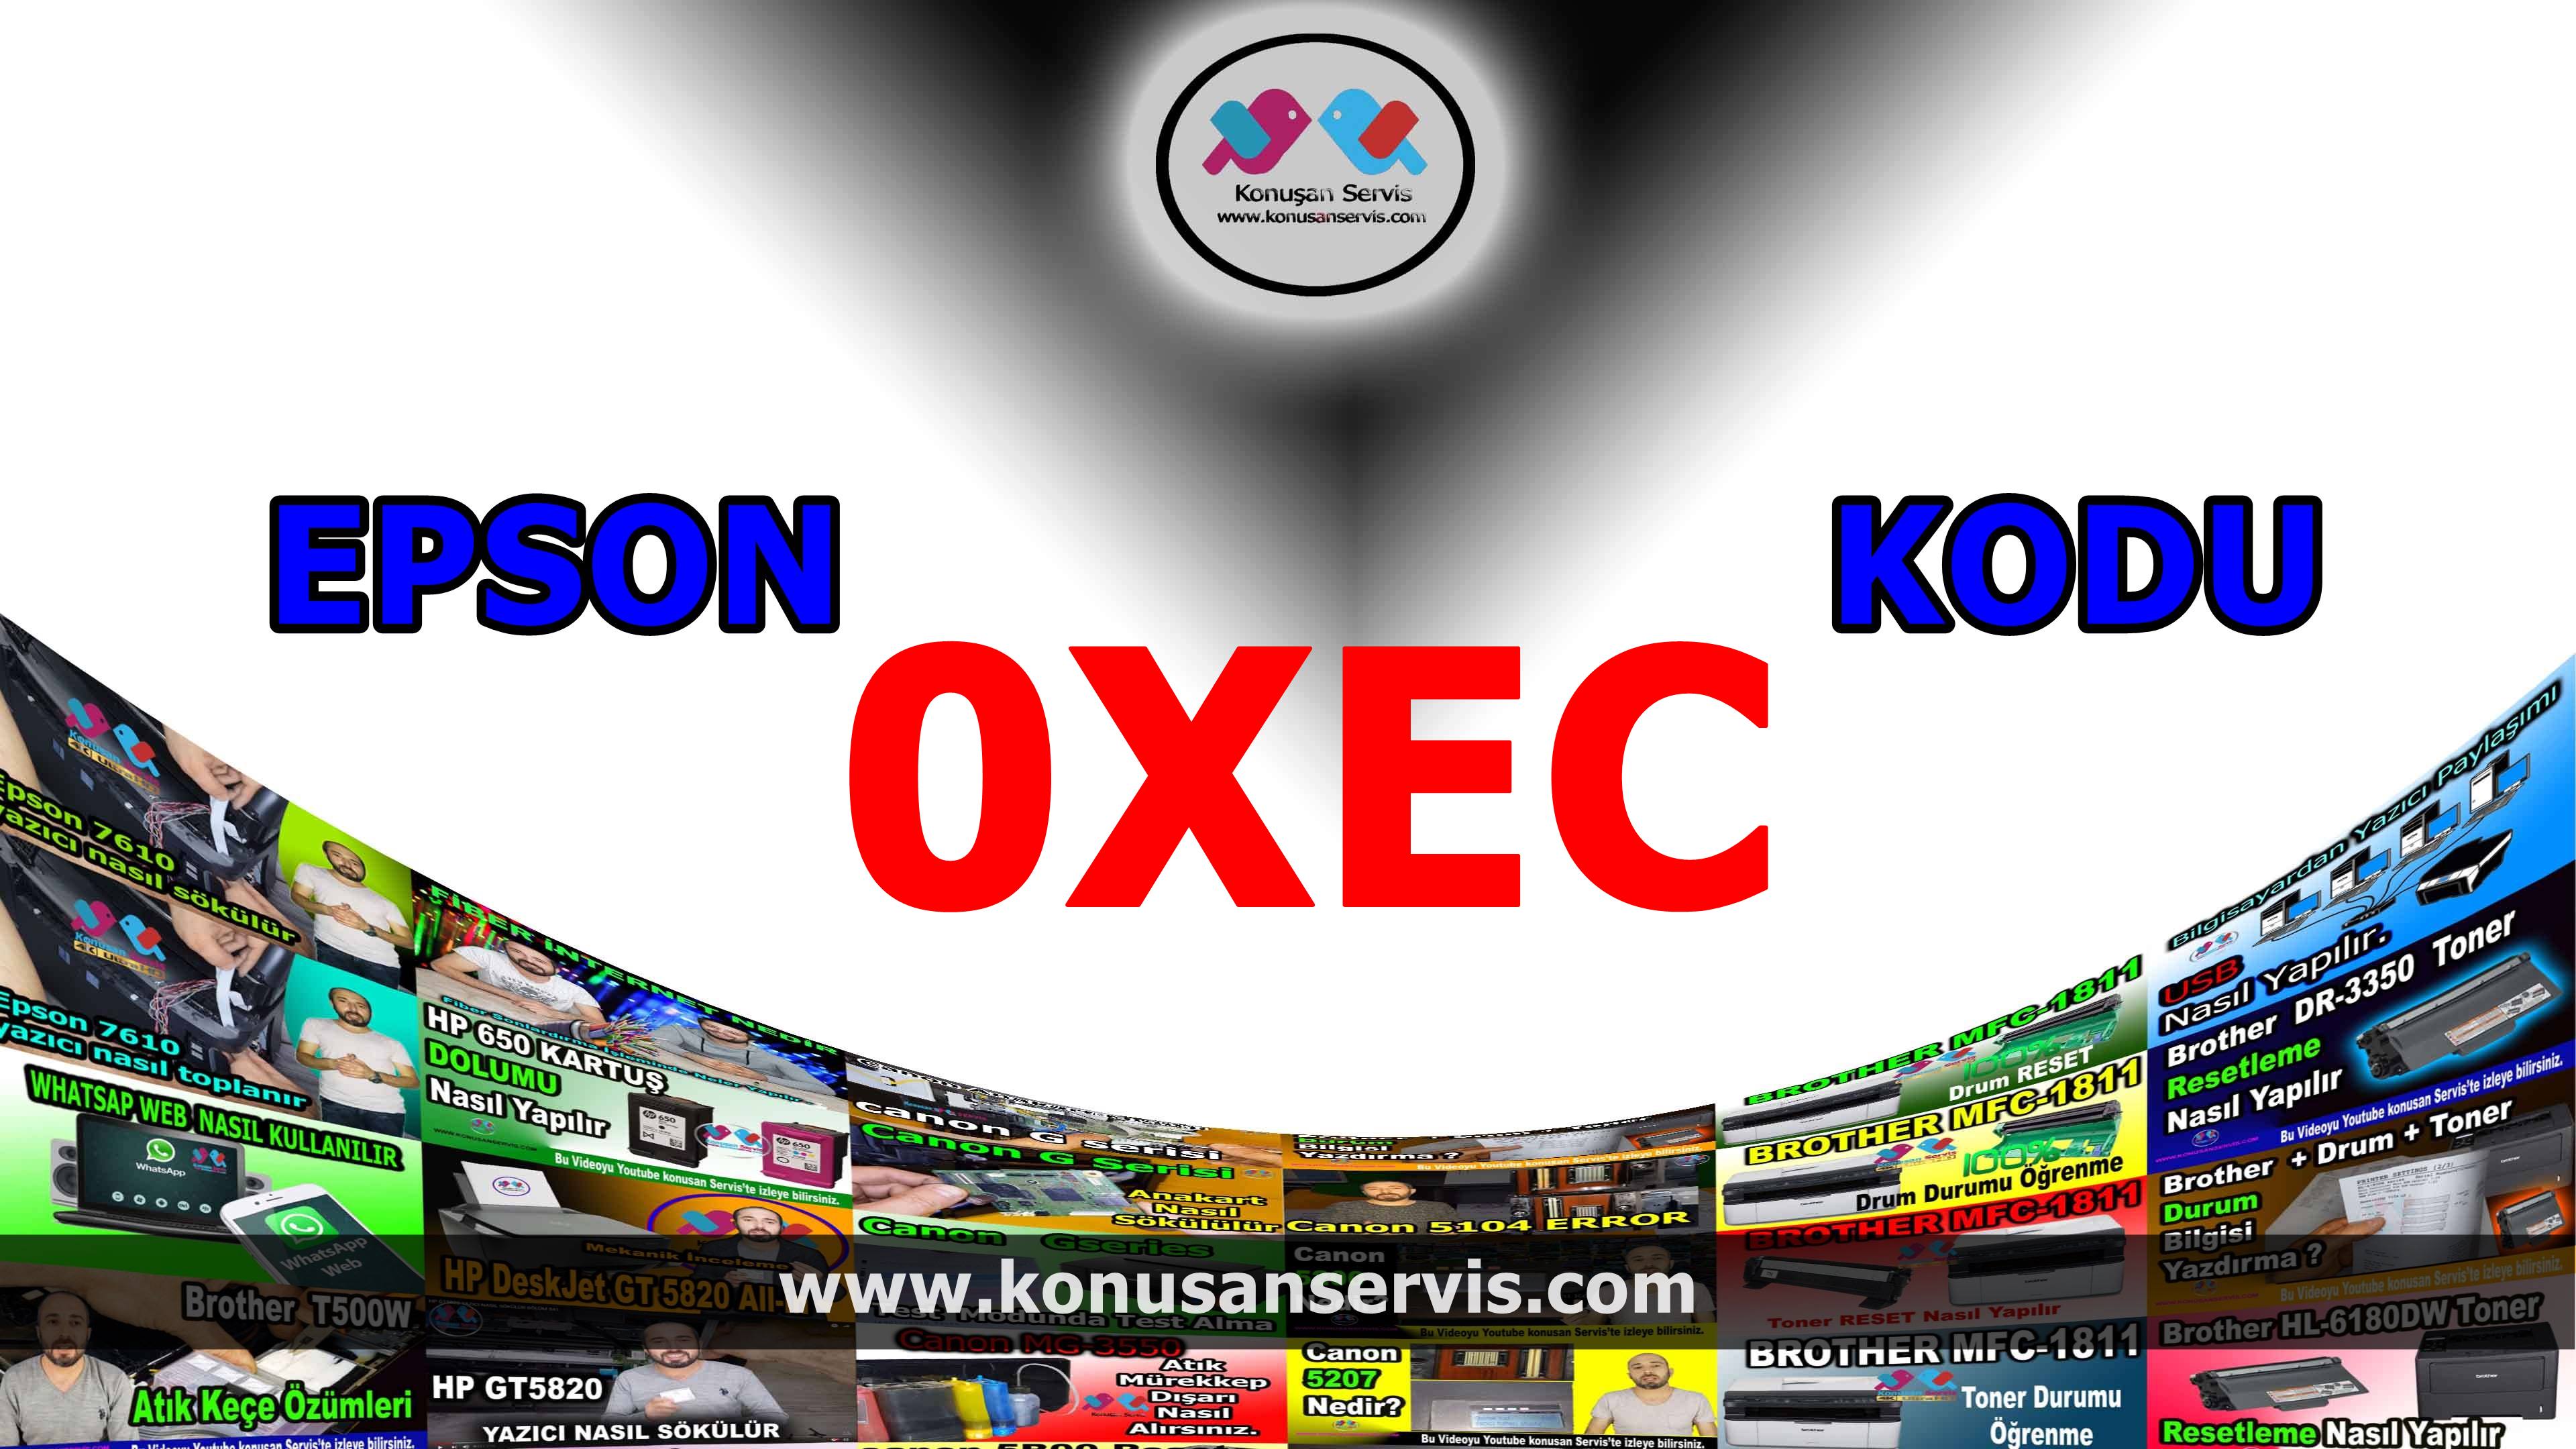 Epson 0xEC Hata Kodlari Ve Desteklenen Arızalar